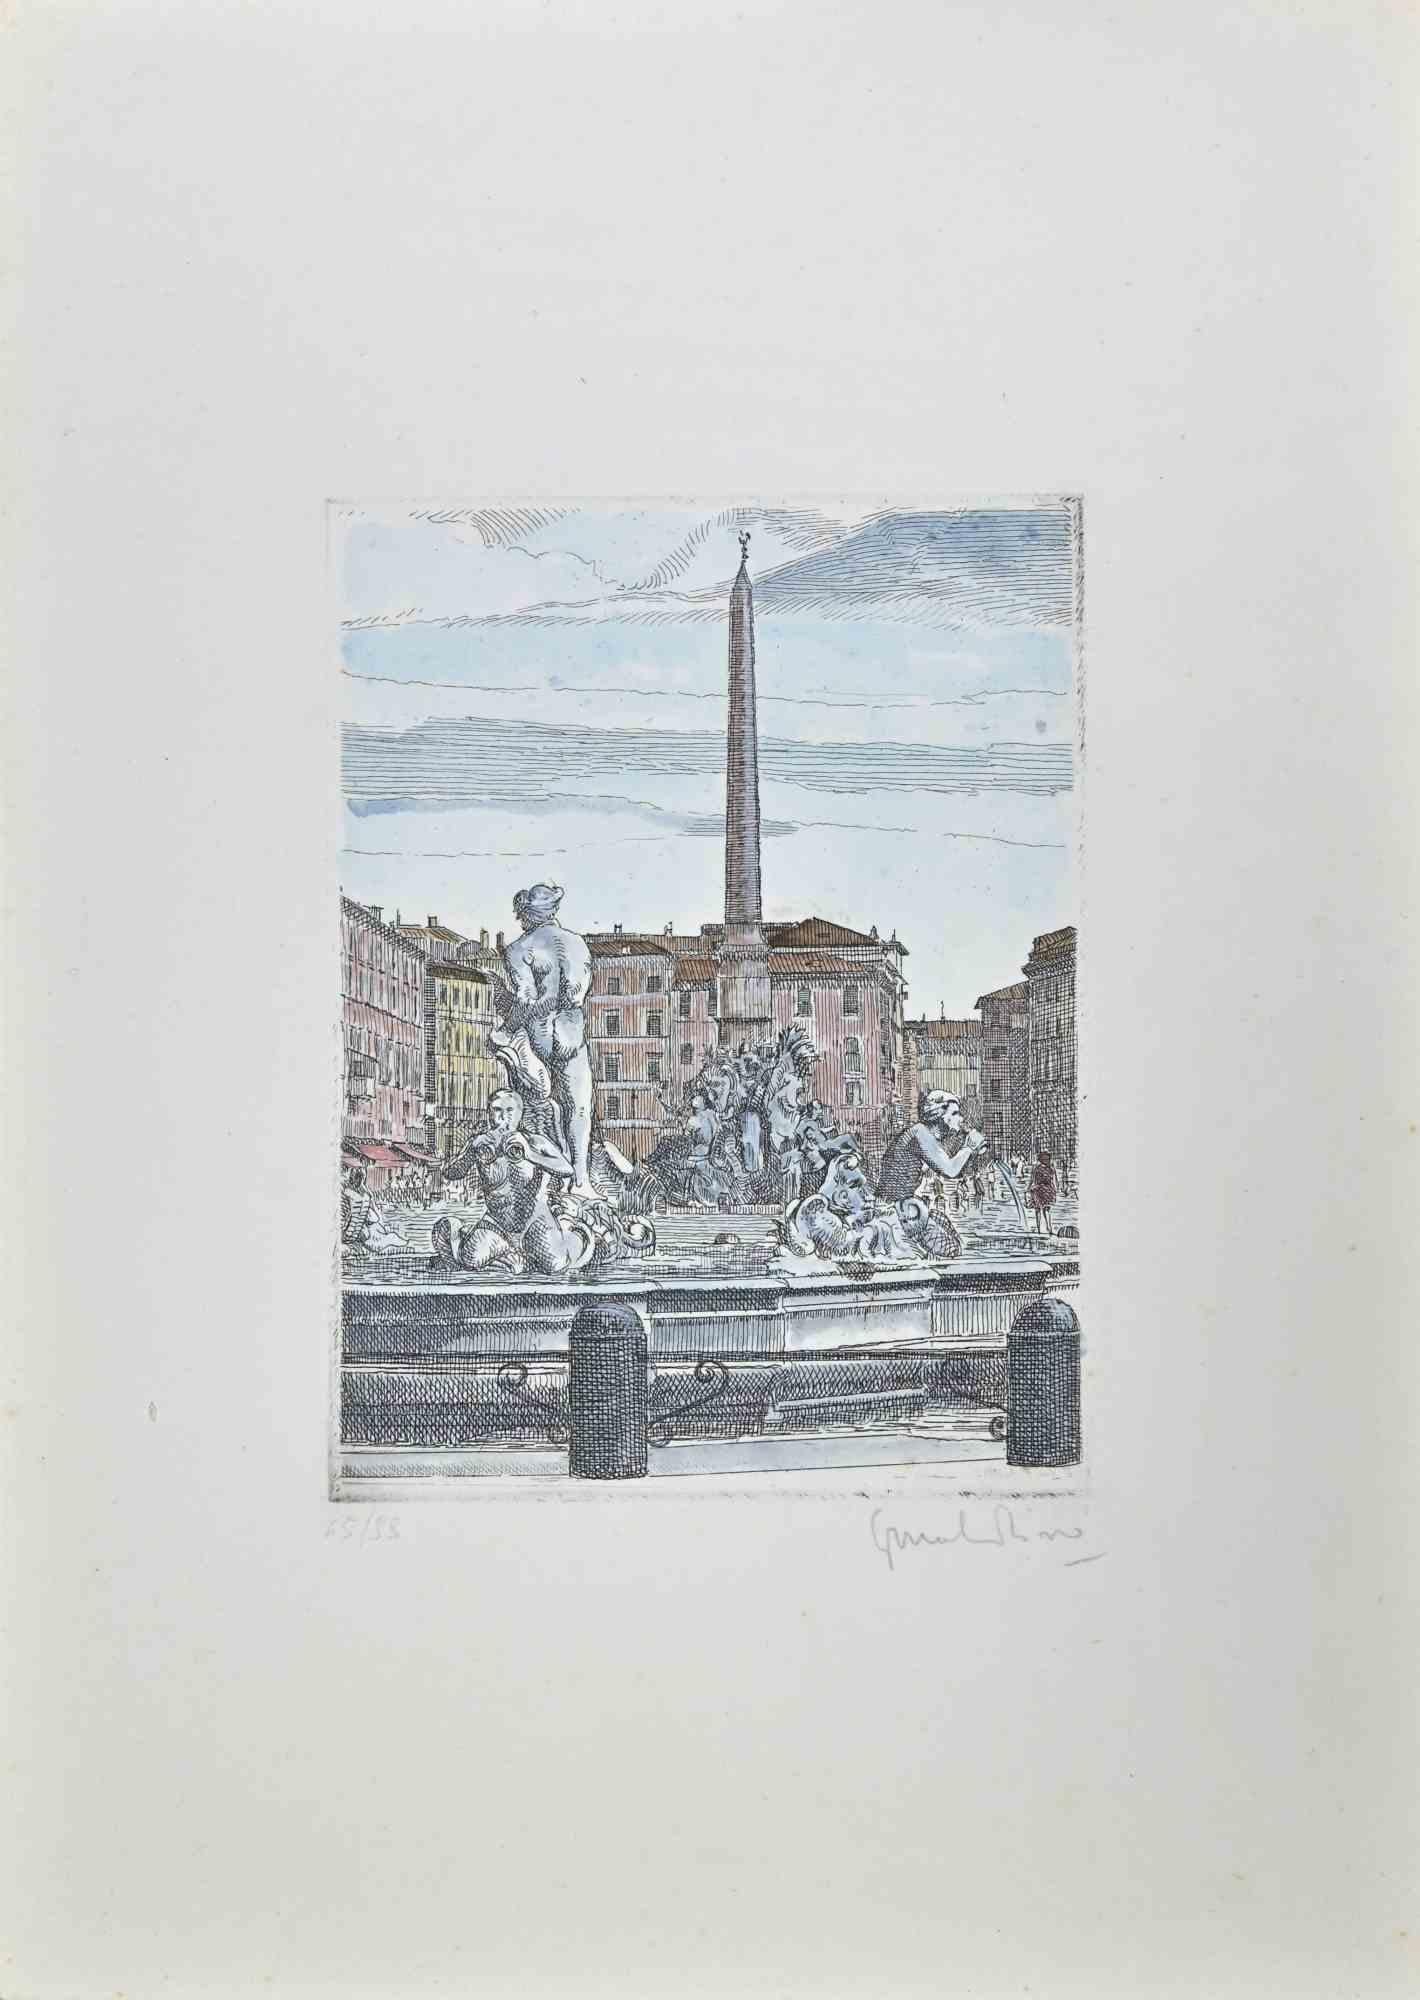 Der Navona-Platz ist eine Radierung, die in der  1960er Jahre von Giuseppe Malandrino .

Original handkolorierter Druck.

Vom Künstler in der rechten unteren Ecke mit Bleistift handsigniert.

Nummeriert, Ausgabe 65/99.

Gute Bedingungen.

Dieses